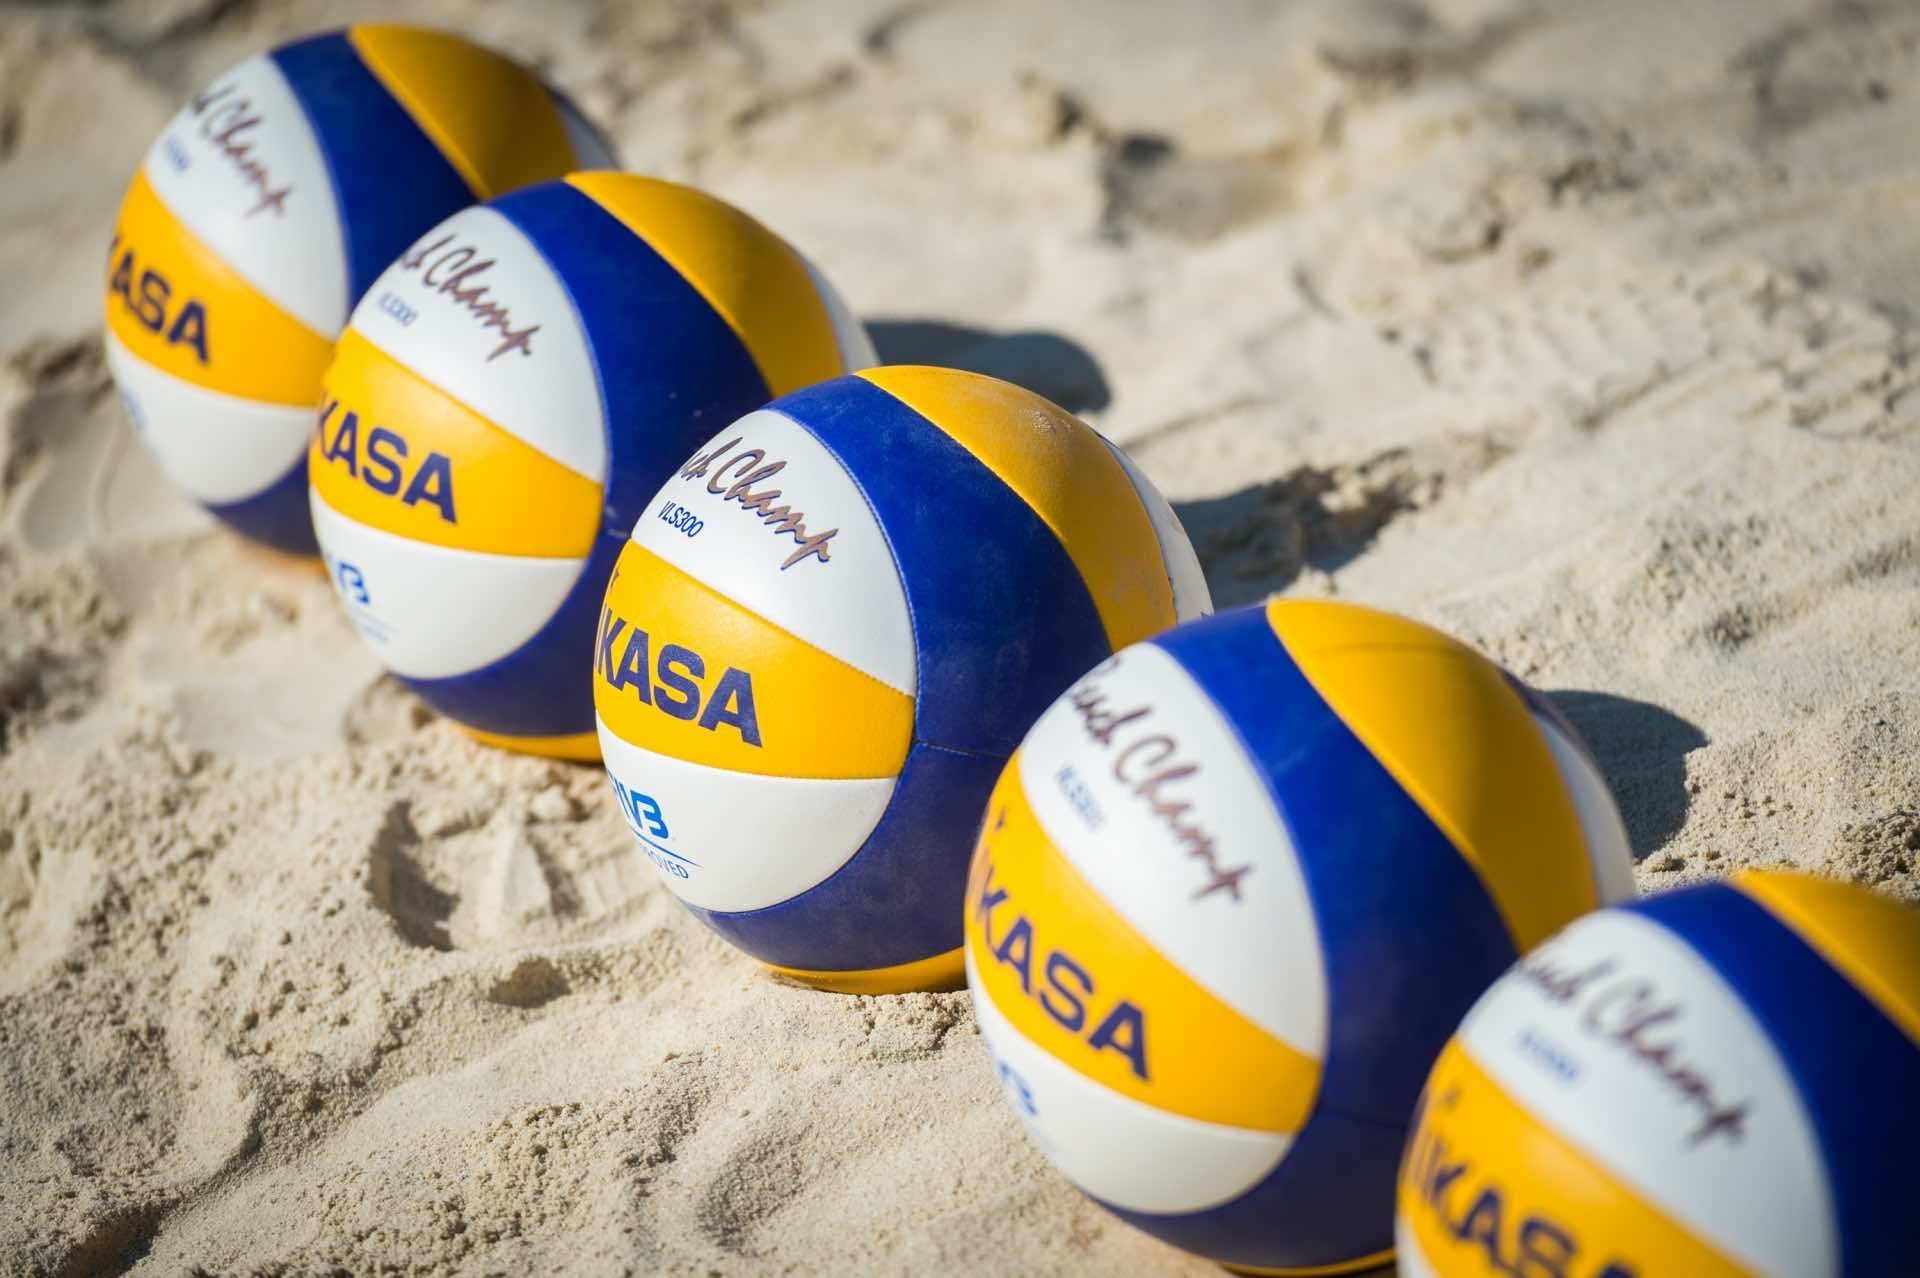 Beach volleyballs, beach volleyballs EVERYWHERE. Photocredit: Bernhard Horst